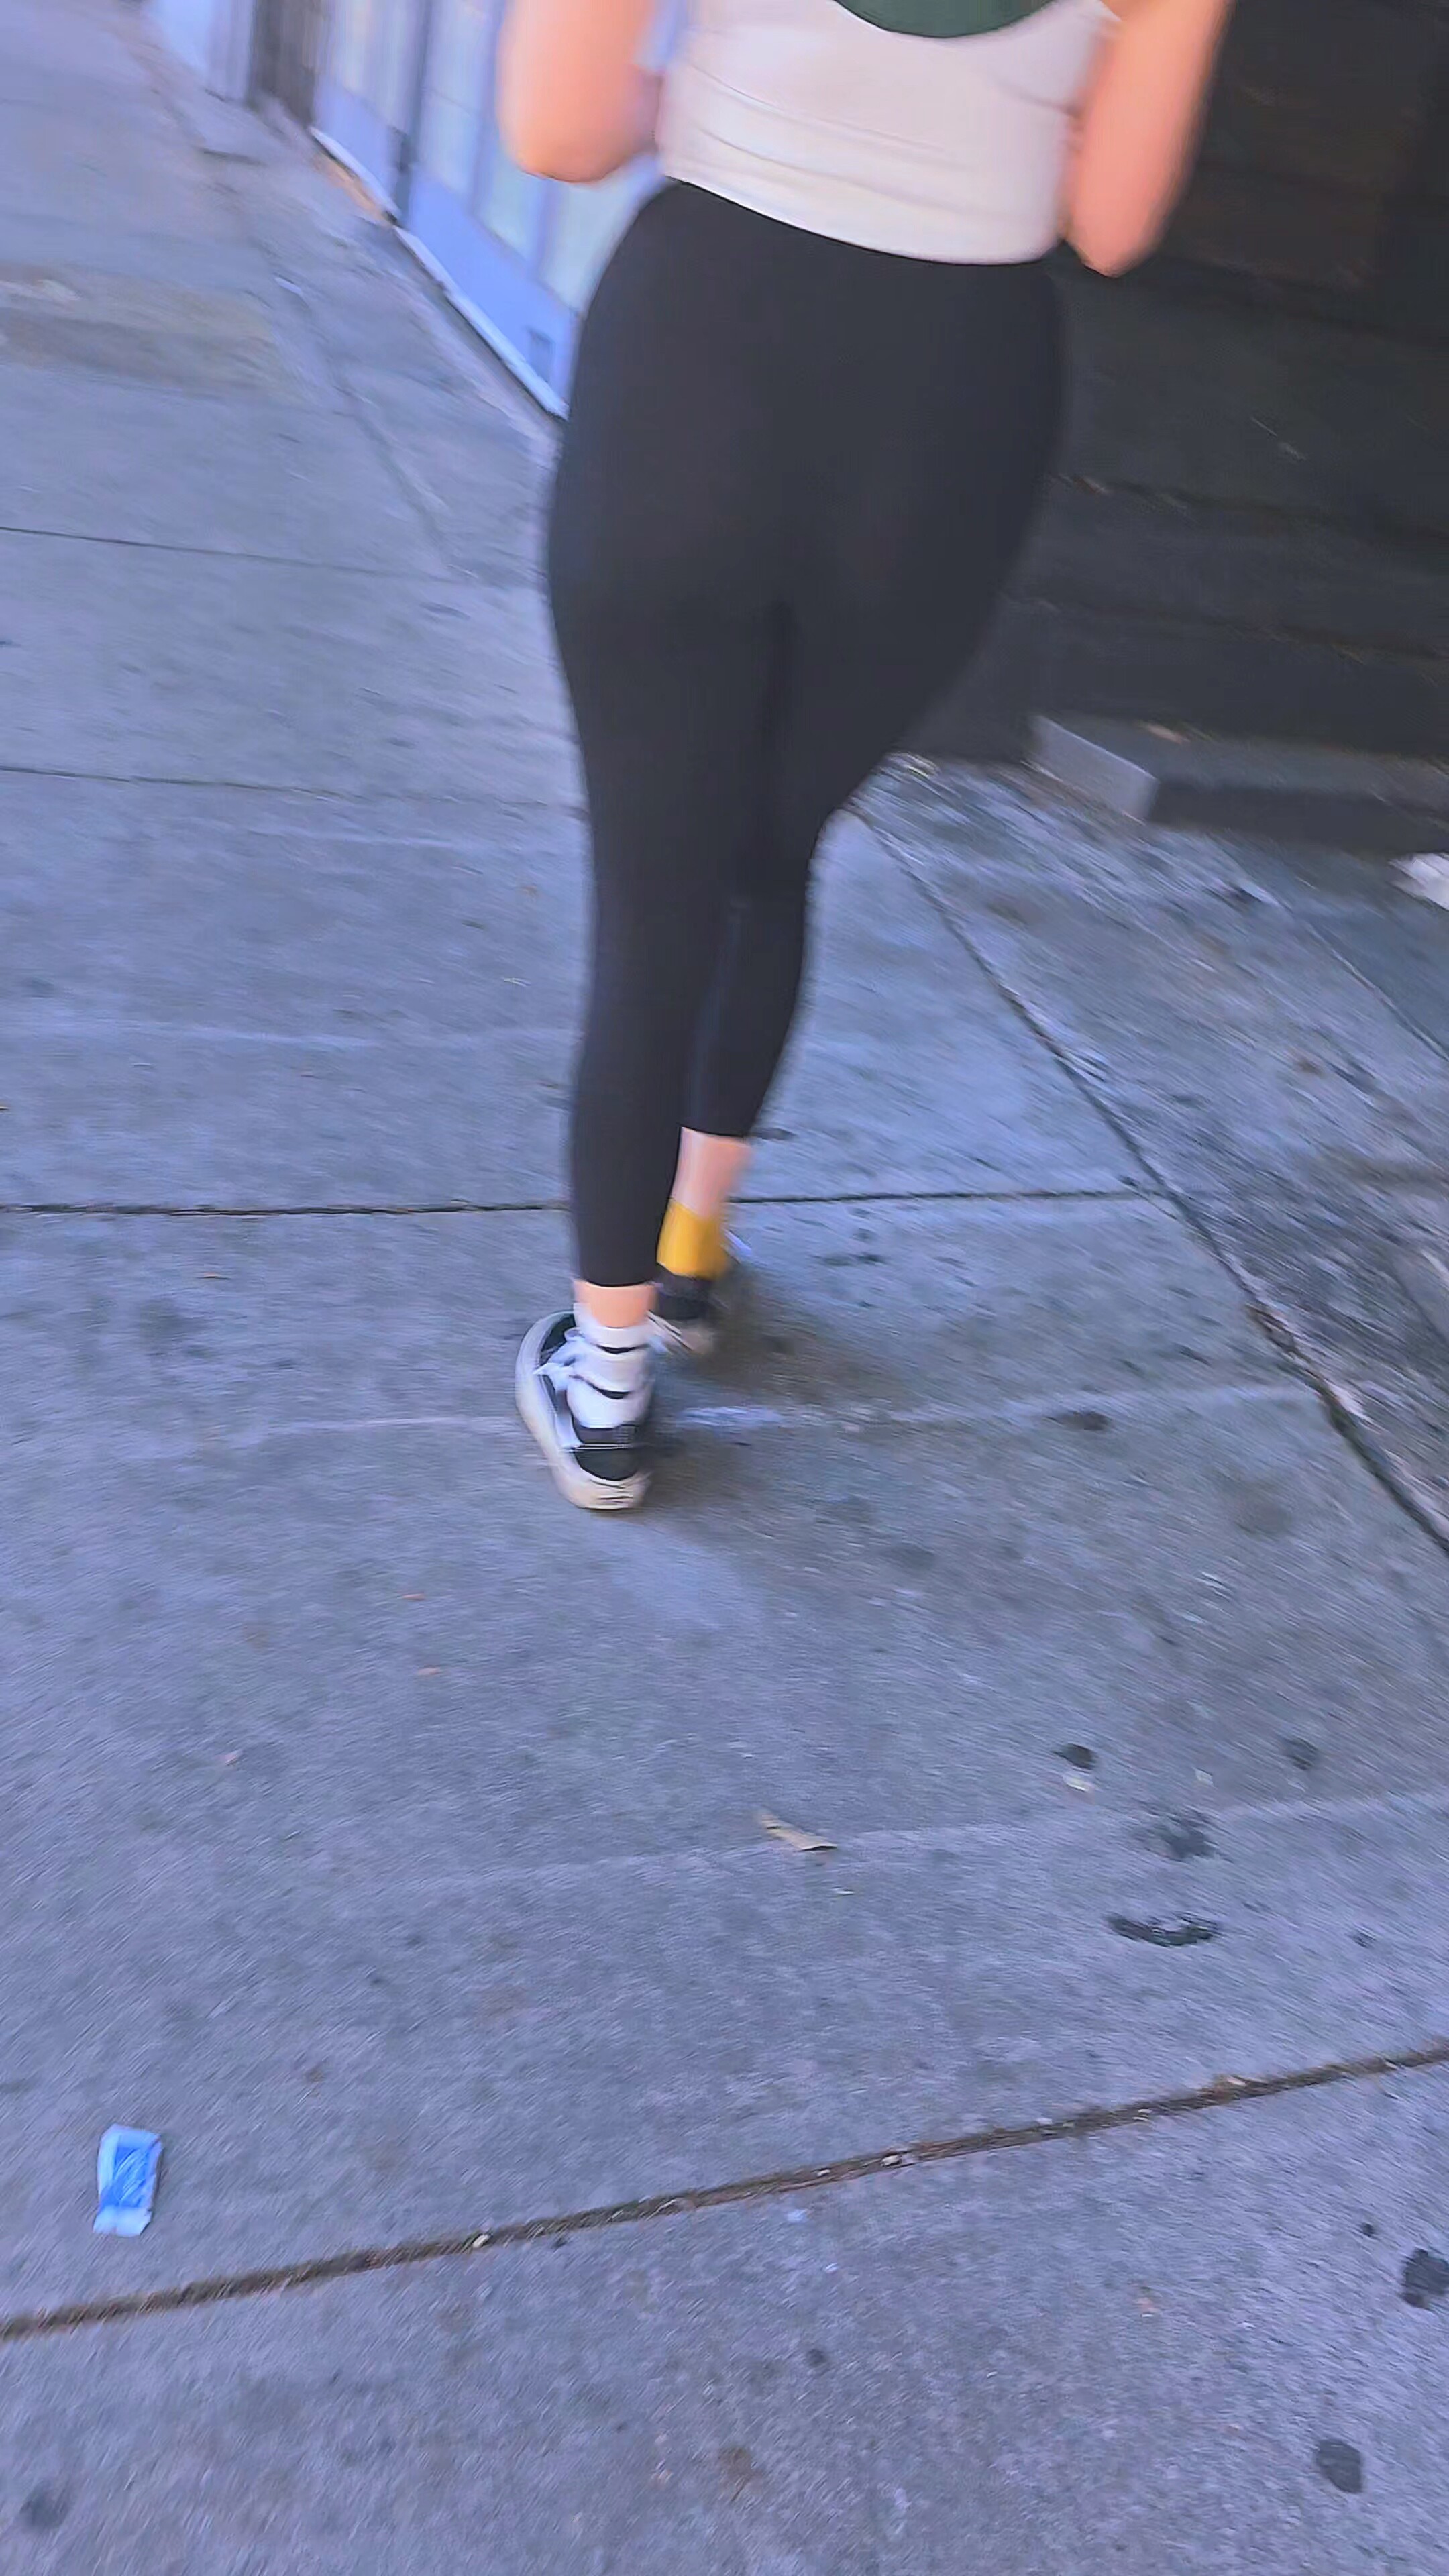 See-through thong in walking workout (black leggings) - Spandex, Leggings &  Yoga Pants - Forum